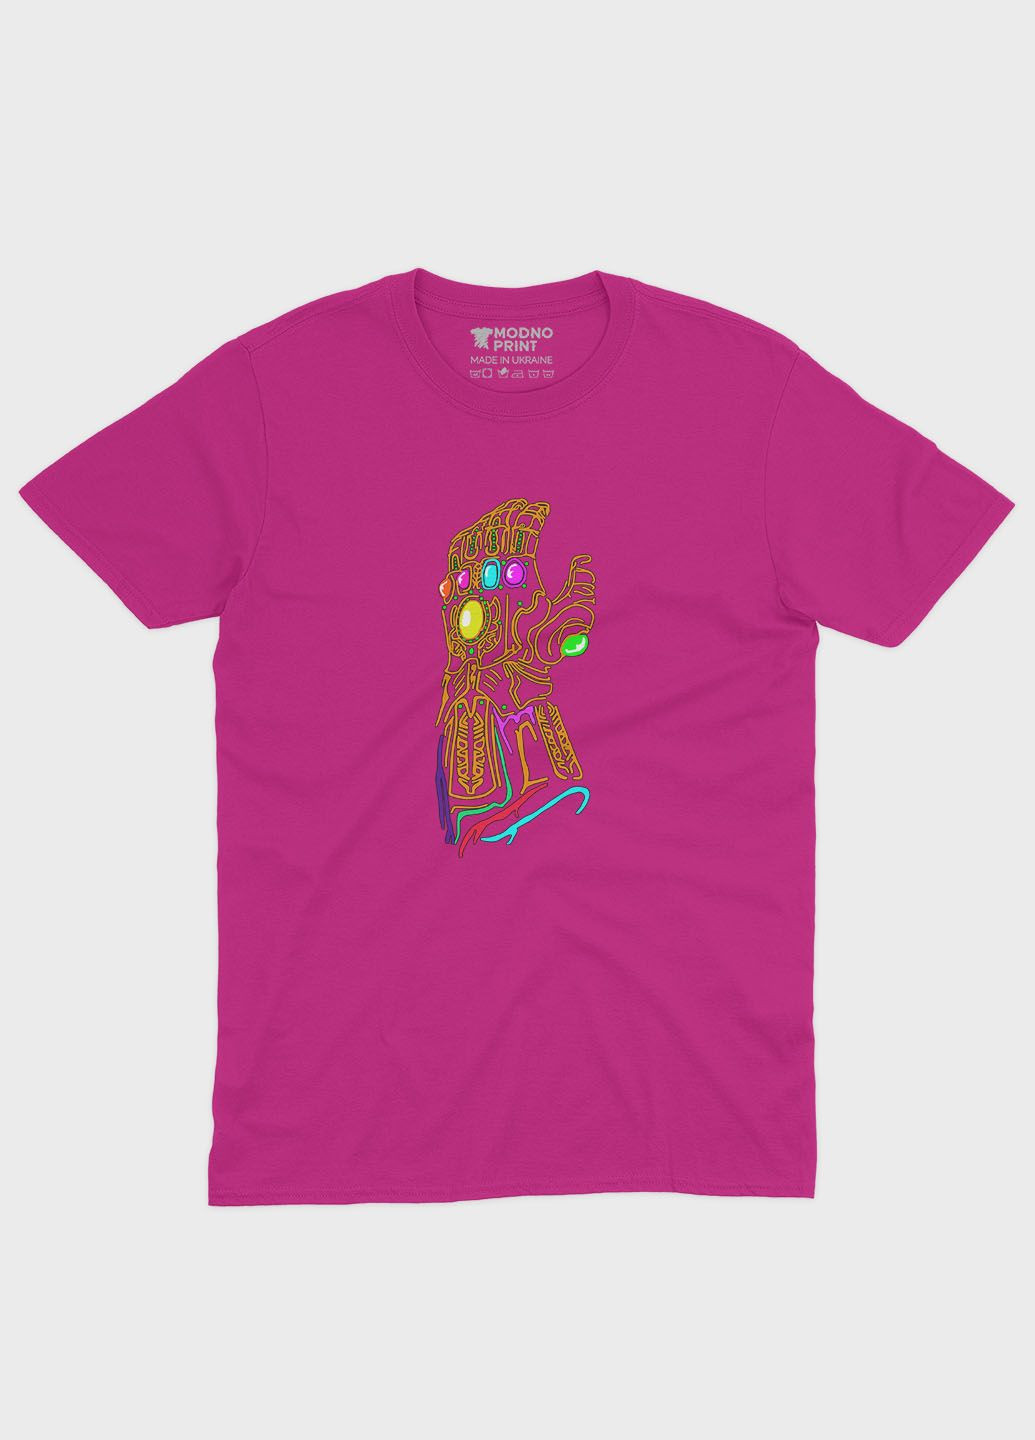 Розовая демисезонная футболка для мальчика с принтом супезлоды - танос (ts001-1-fuxj-006-019-014-b) Modno